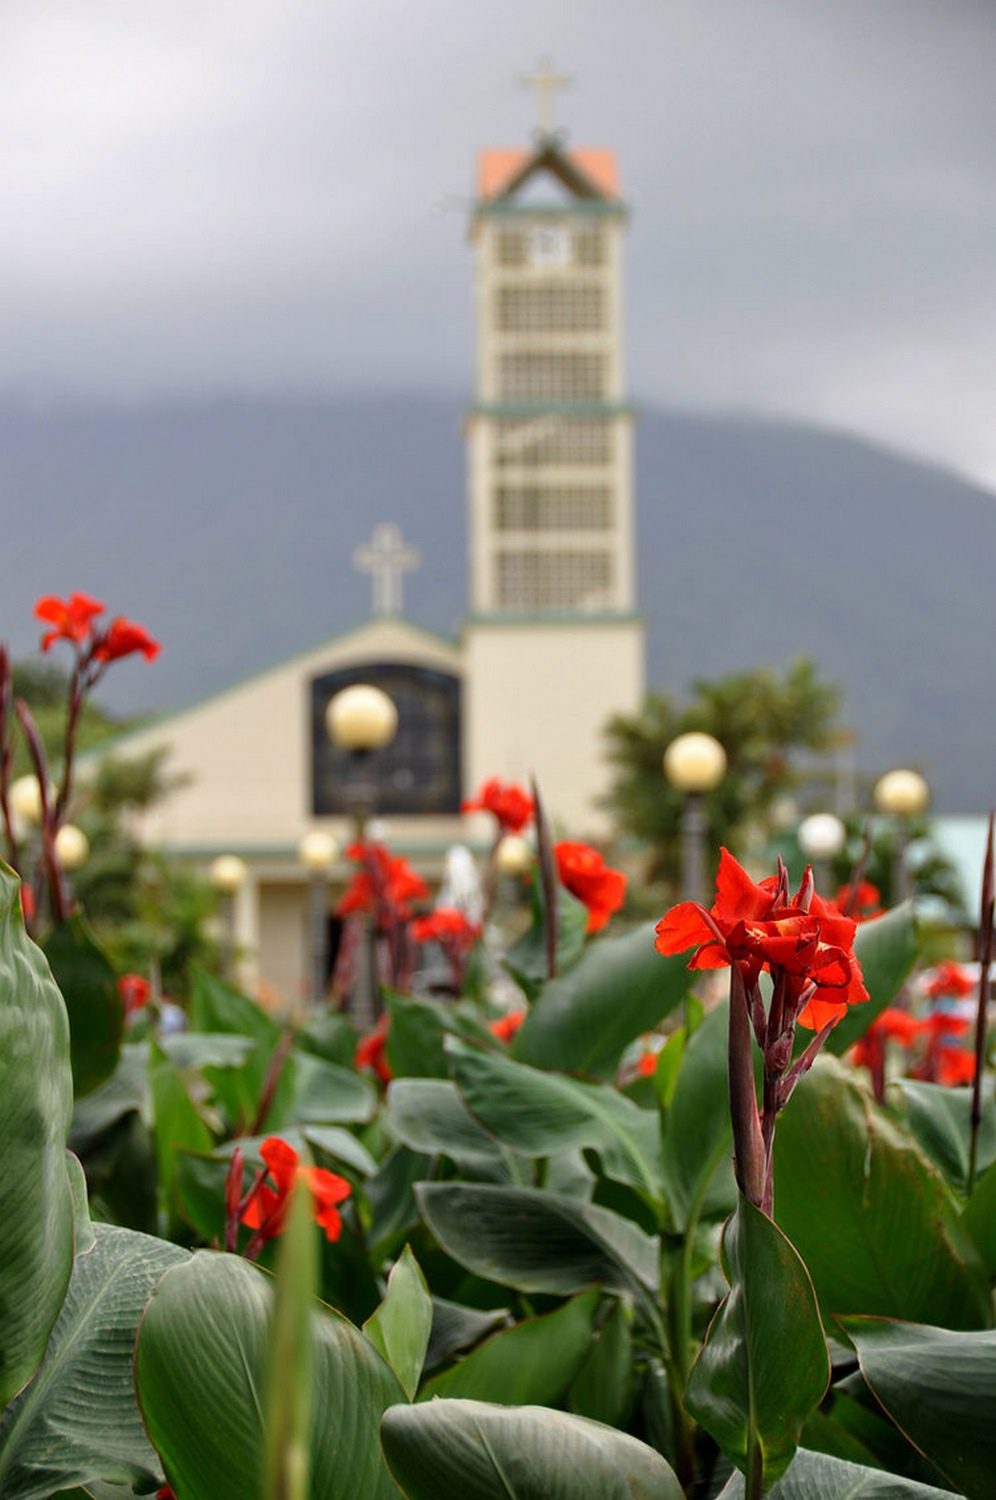 阿雷纳哥斯达黎加教堂摄影技巧